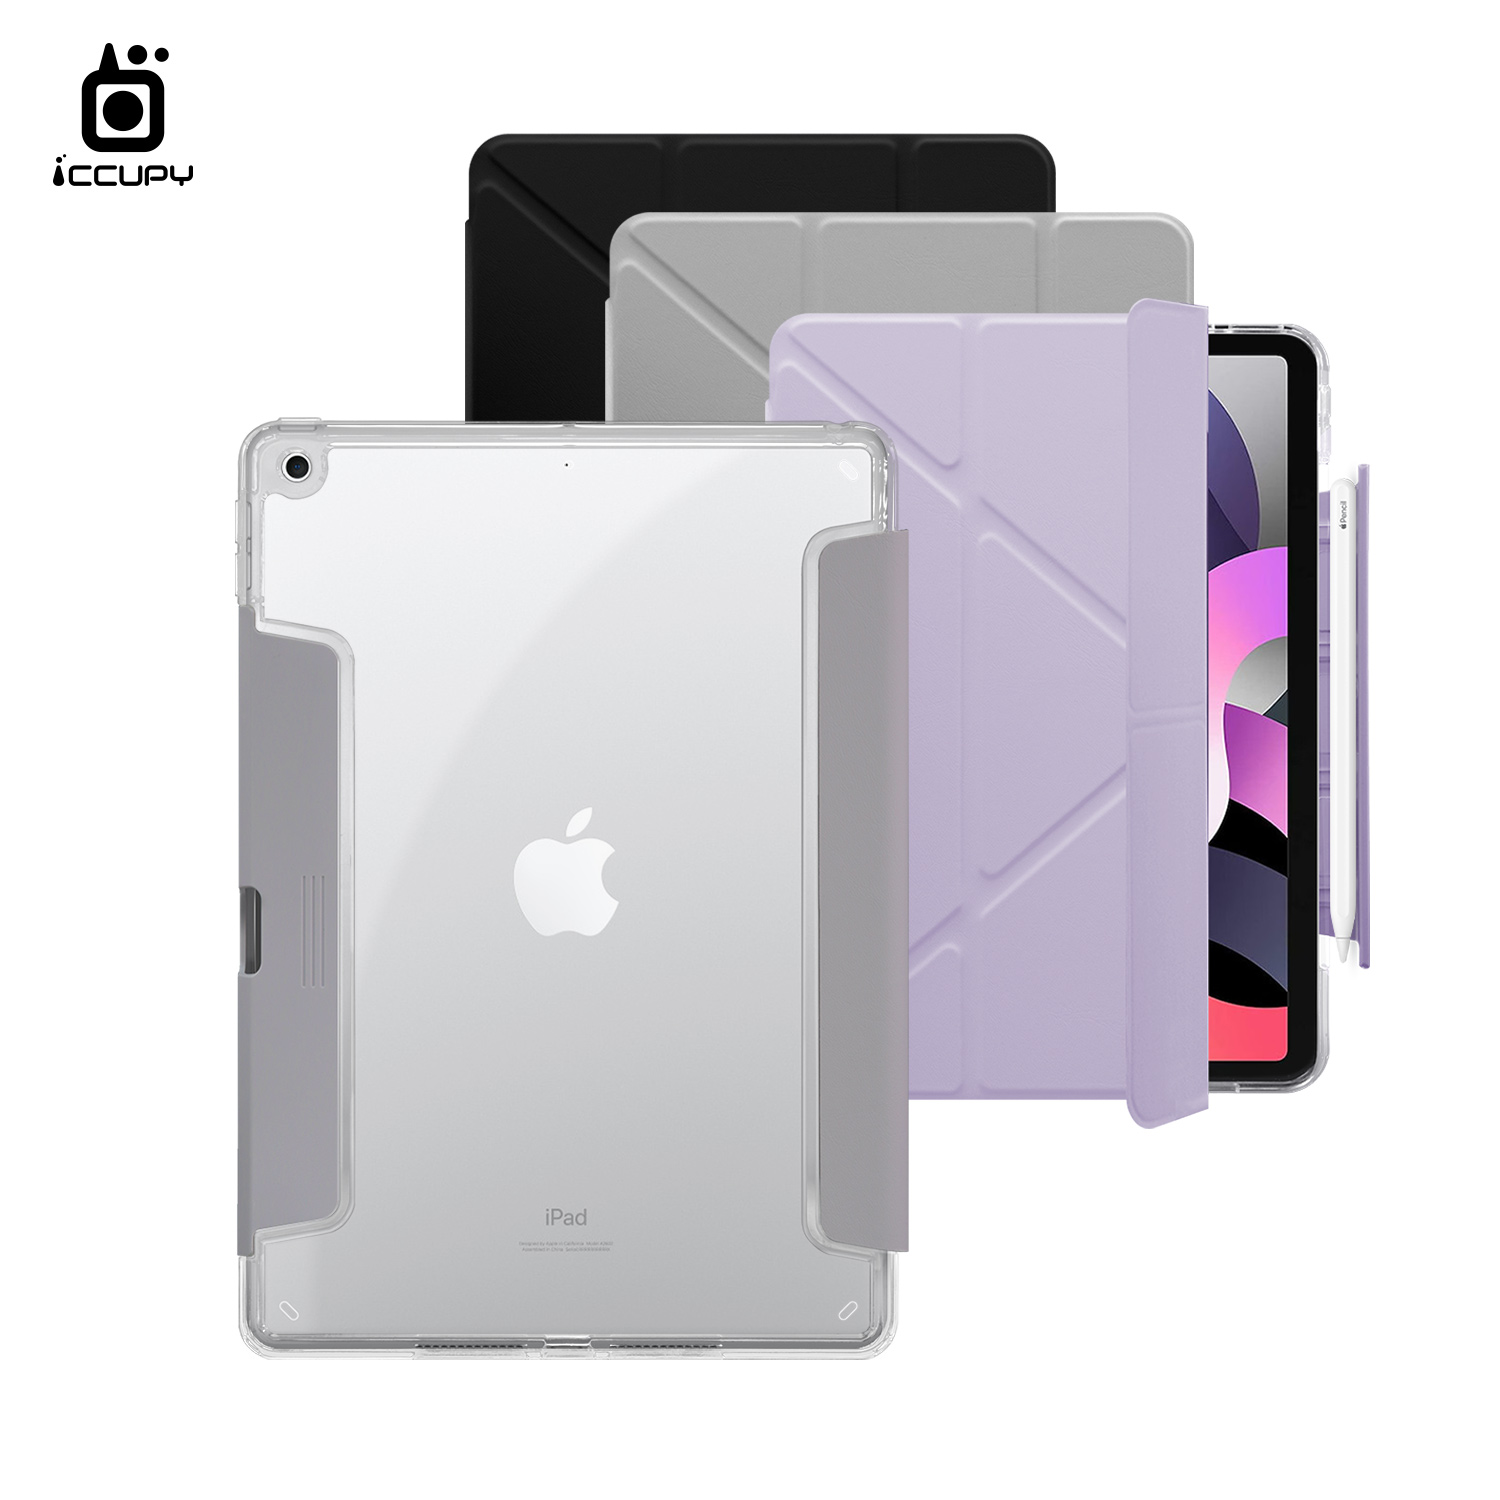 【iCCUPY黑占盾For iPad】黑占盾平板HD系列-隱藏式抽屜筆槽(共三色) For iPad (2019)第7代 10.2吋